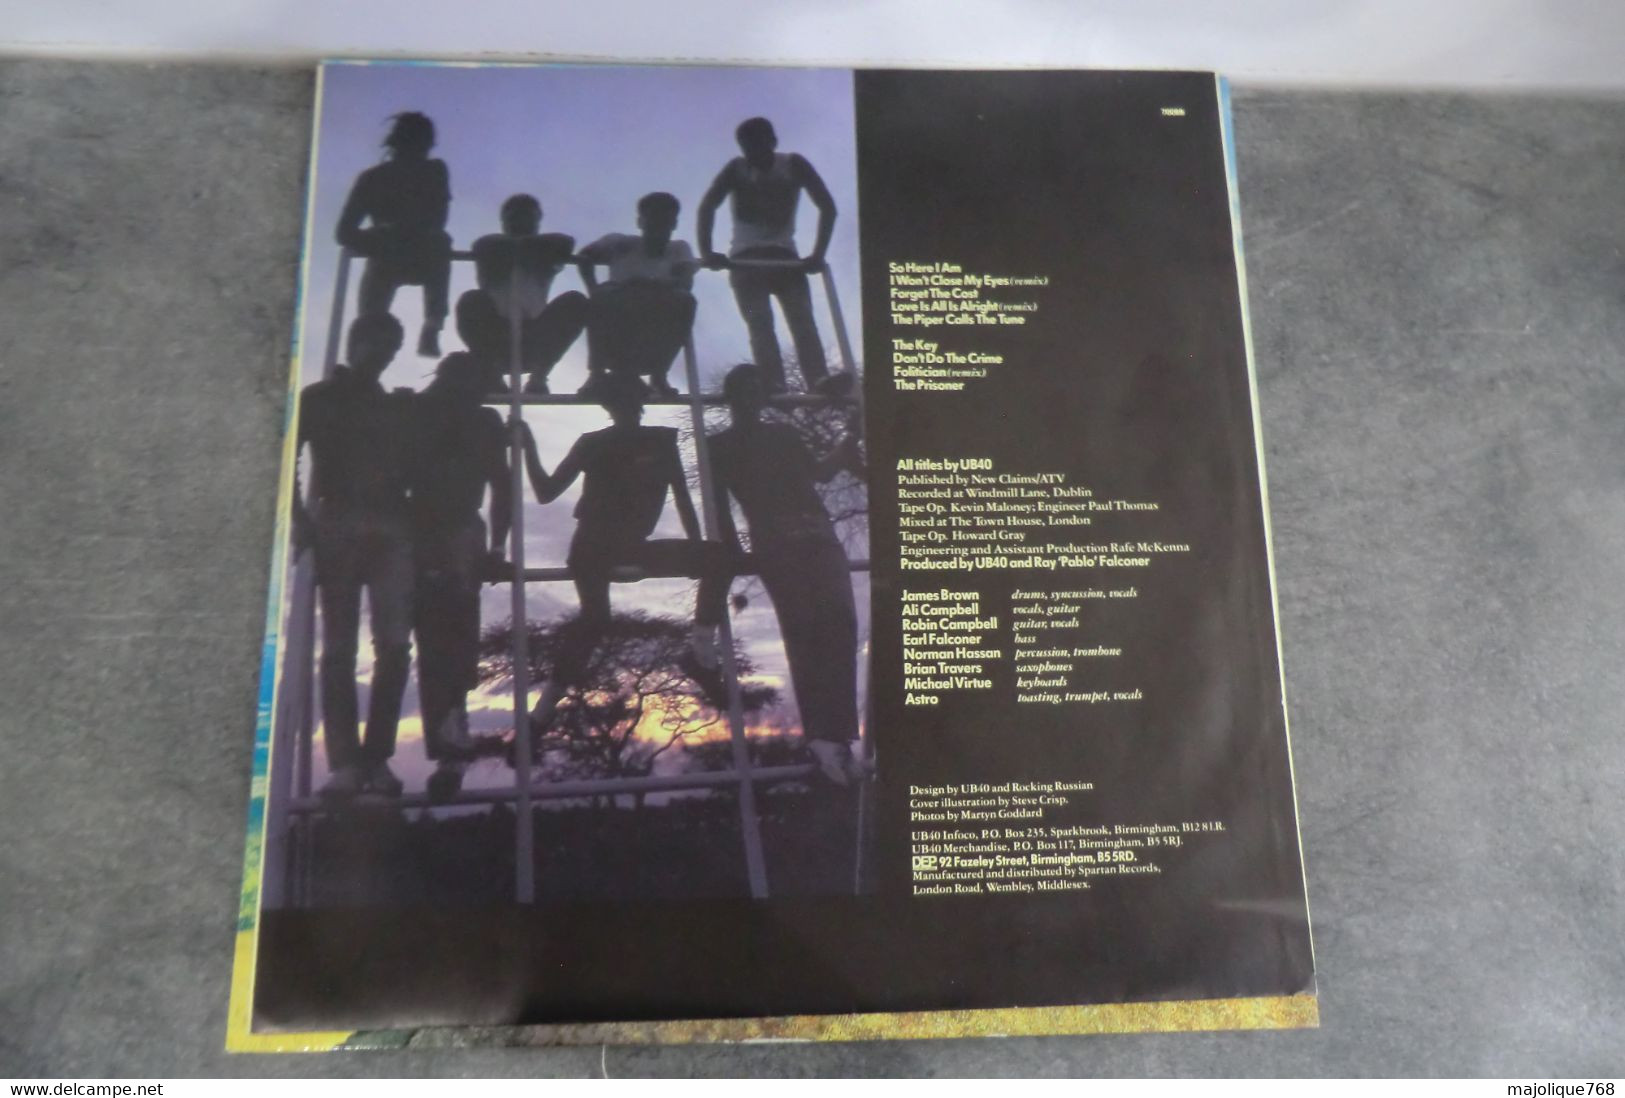 Disque De  UB40 "UB44"   - So Here I Am - DEP International 70099 - France 1982 - Reggae